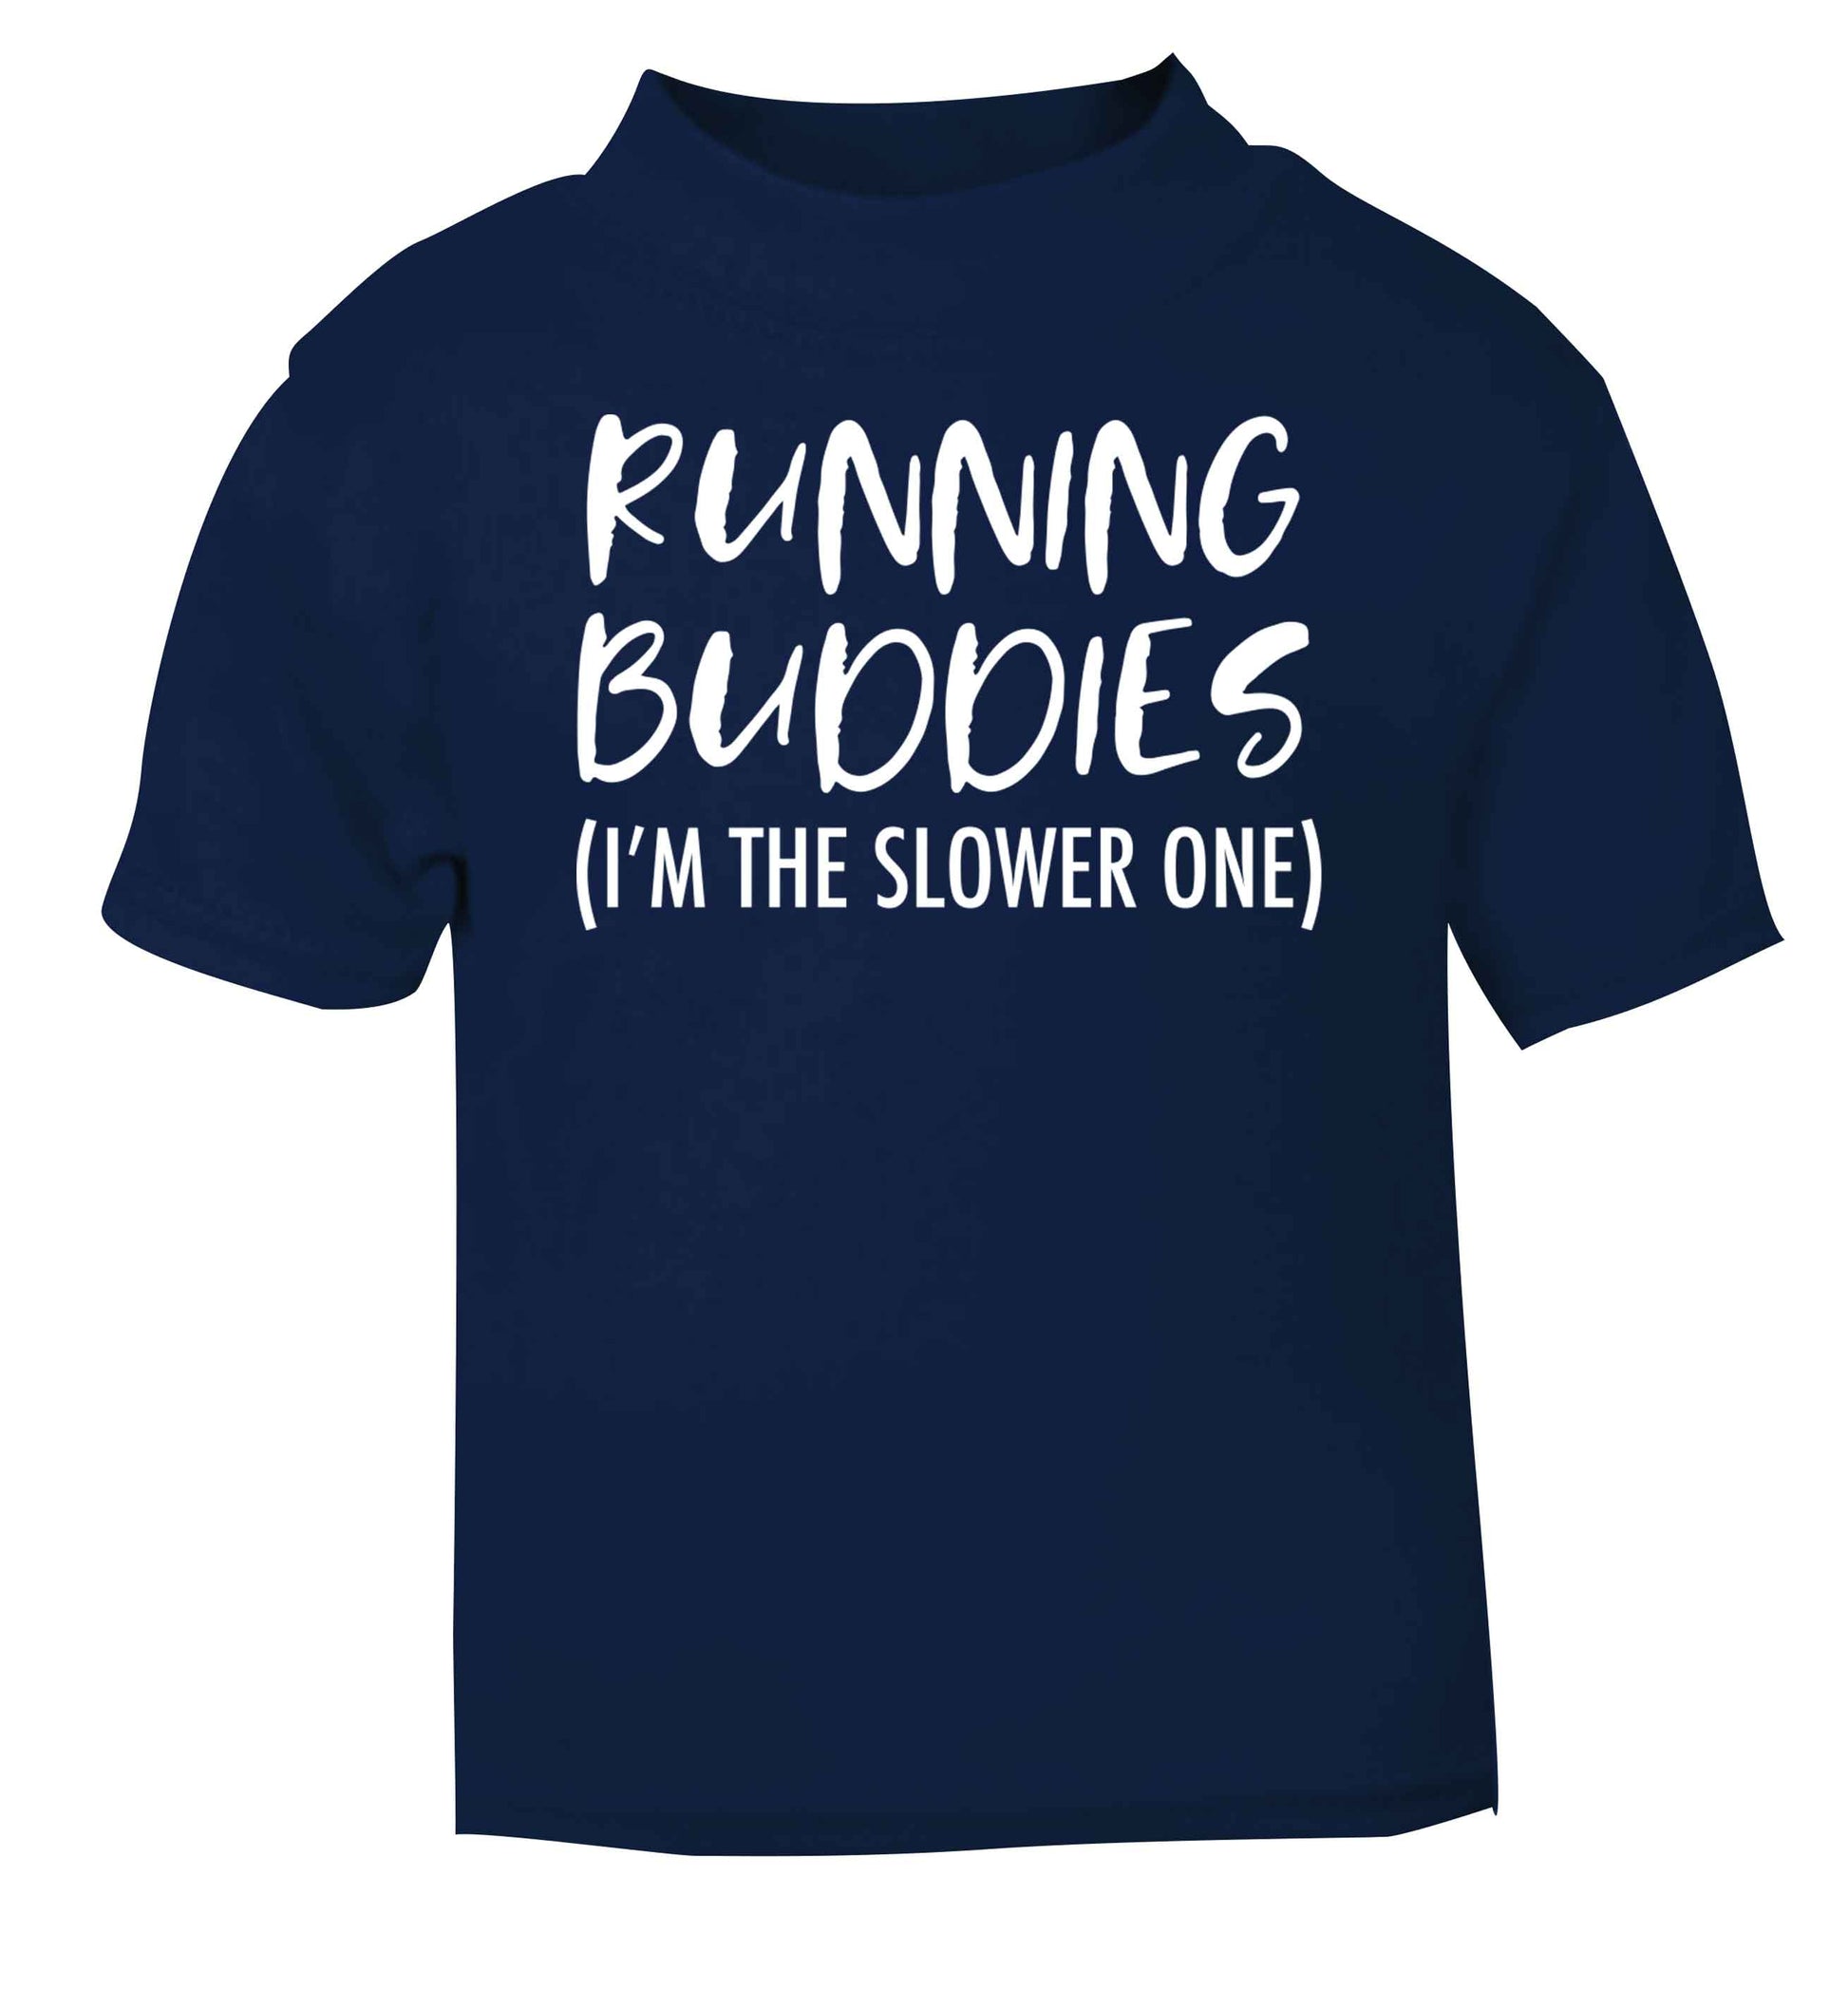 Running buddies (I'm the slower one) navy baby toddler Tshirt 2 Years